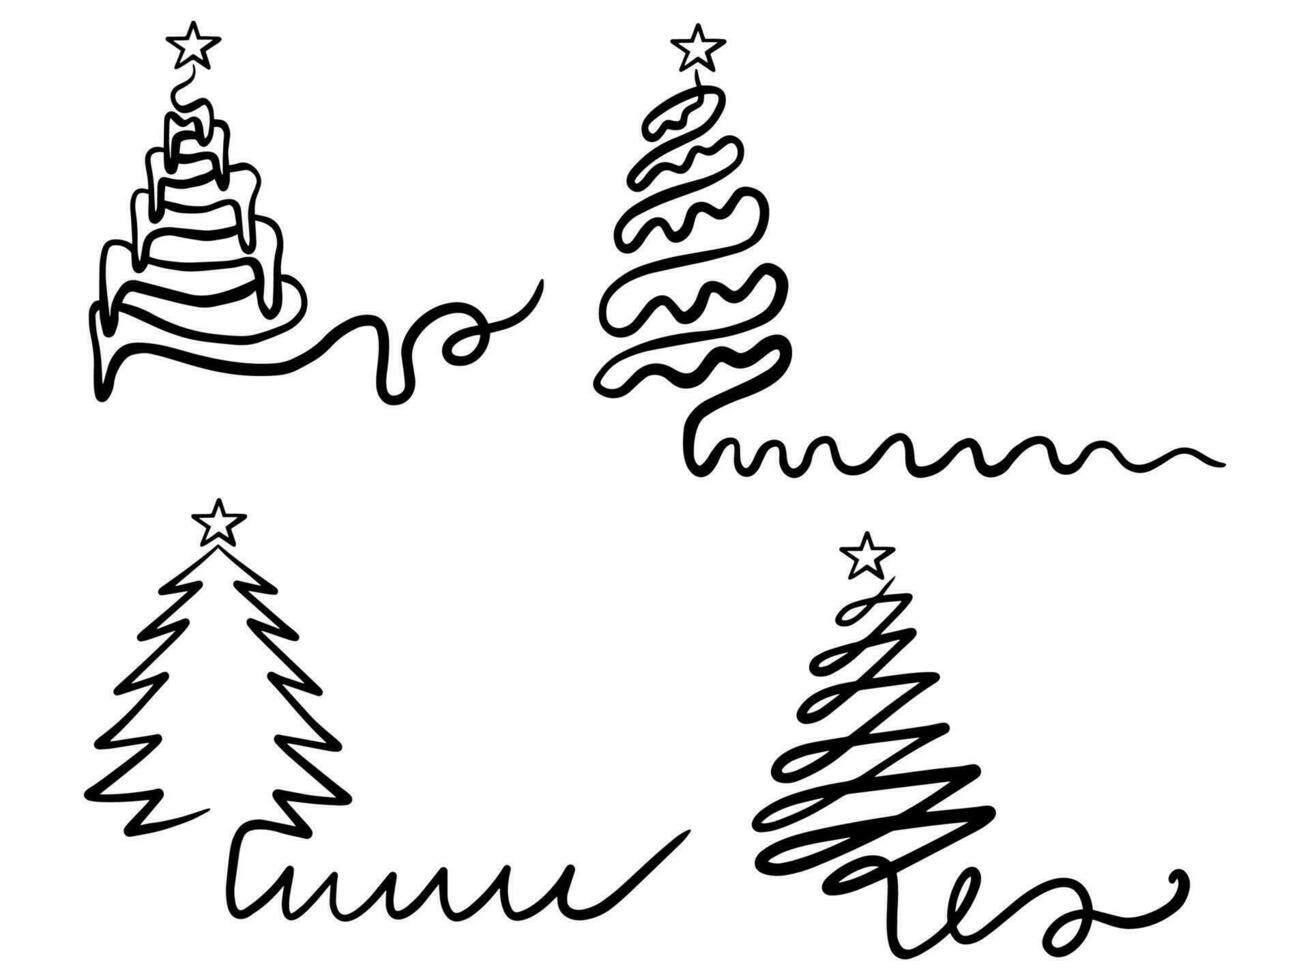 Weihnachtsbaum Strichzeichnungen vektor